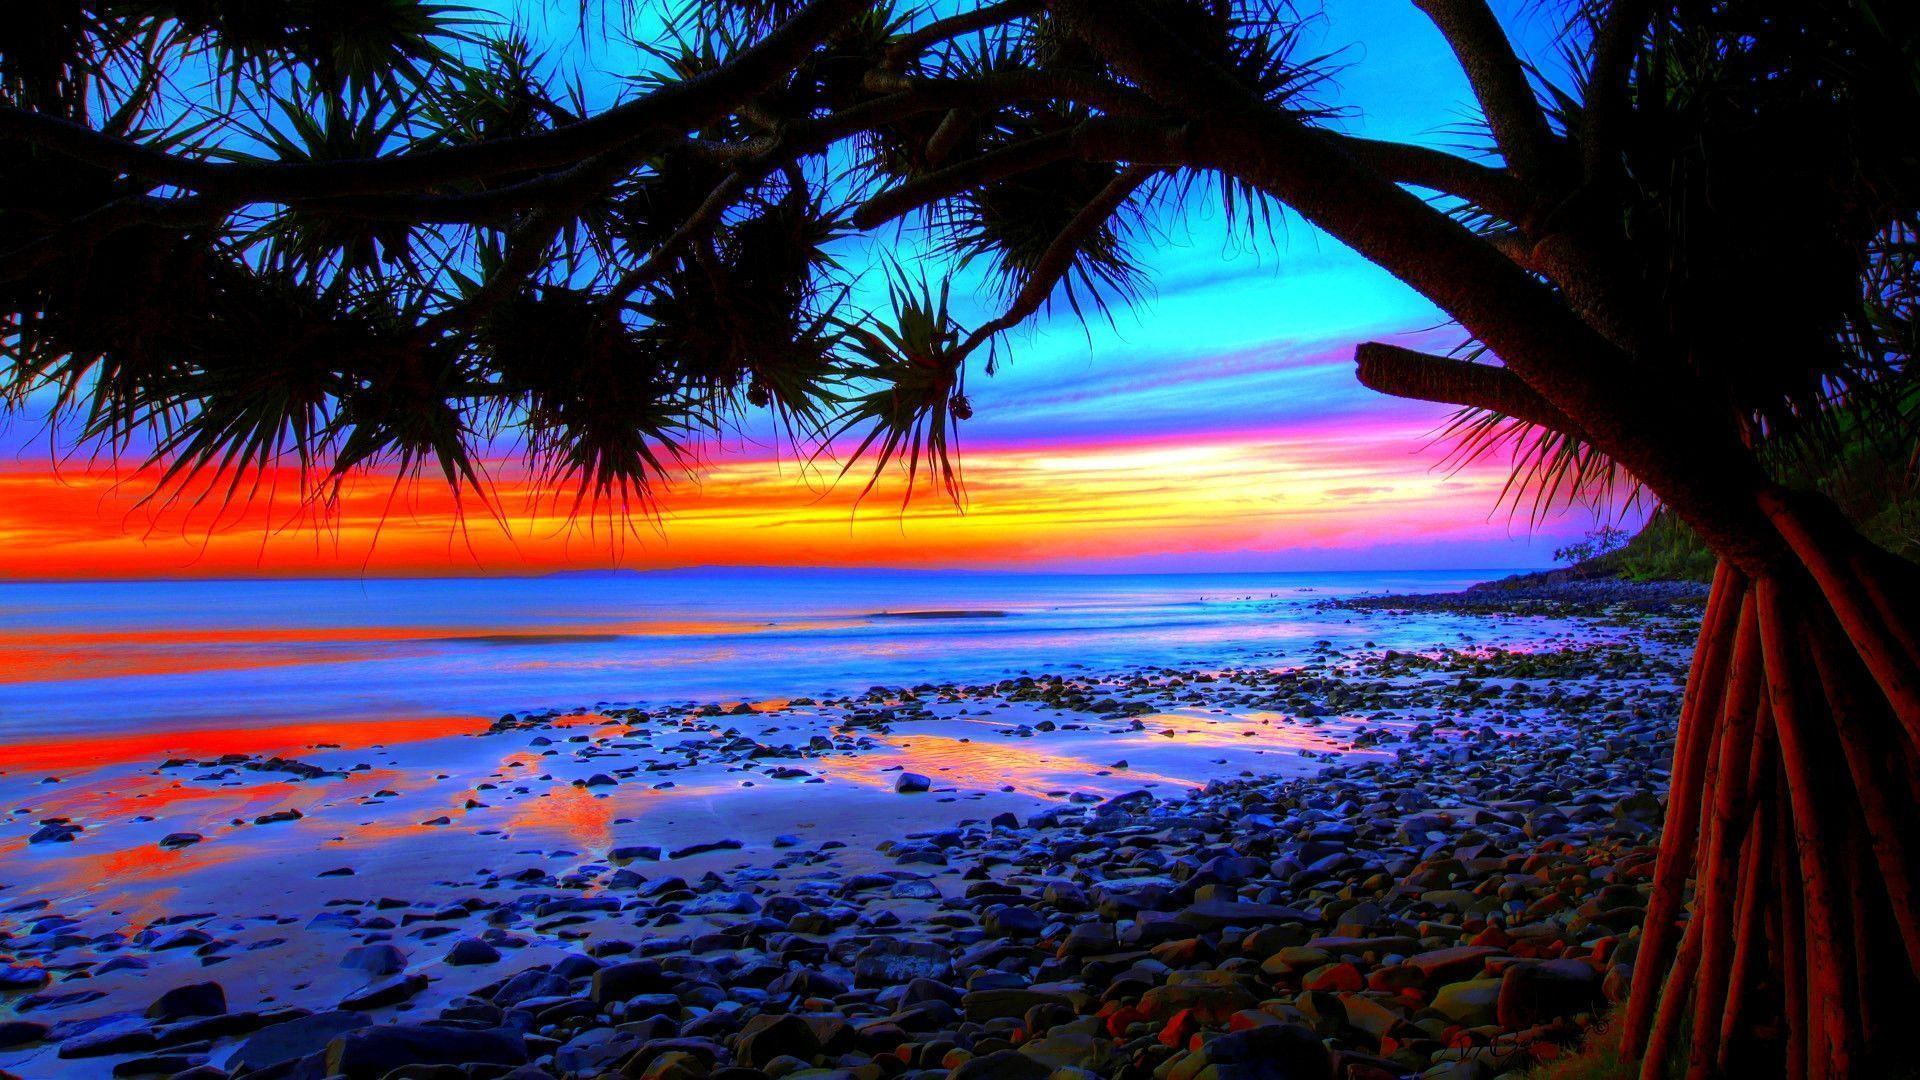 Sunset Beach Palm Tress HD Wallpaper For Desktop Background